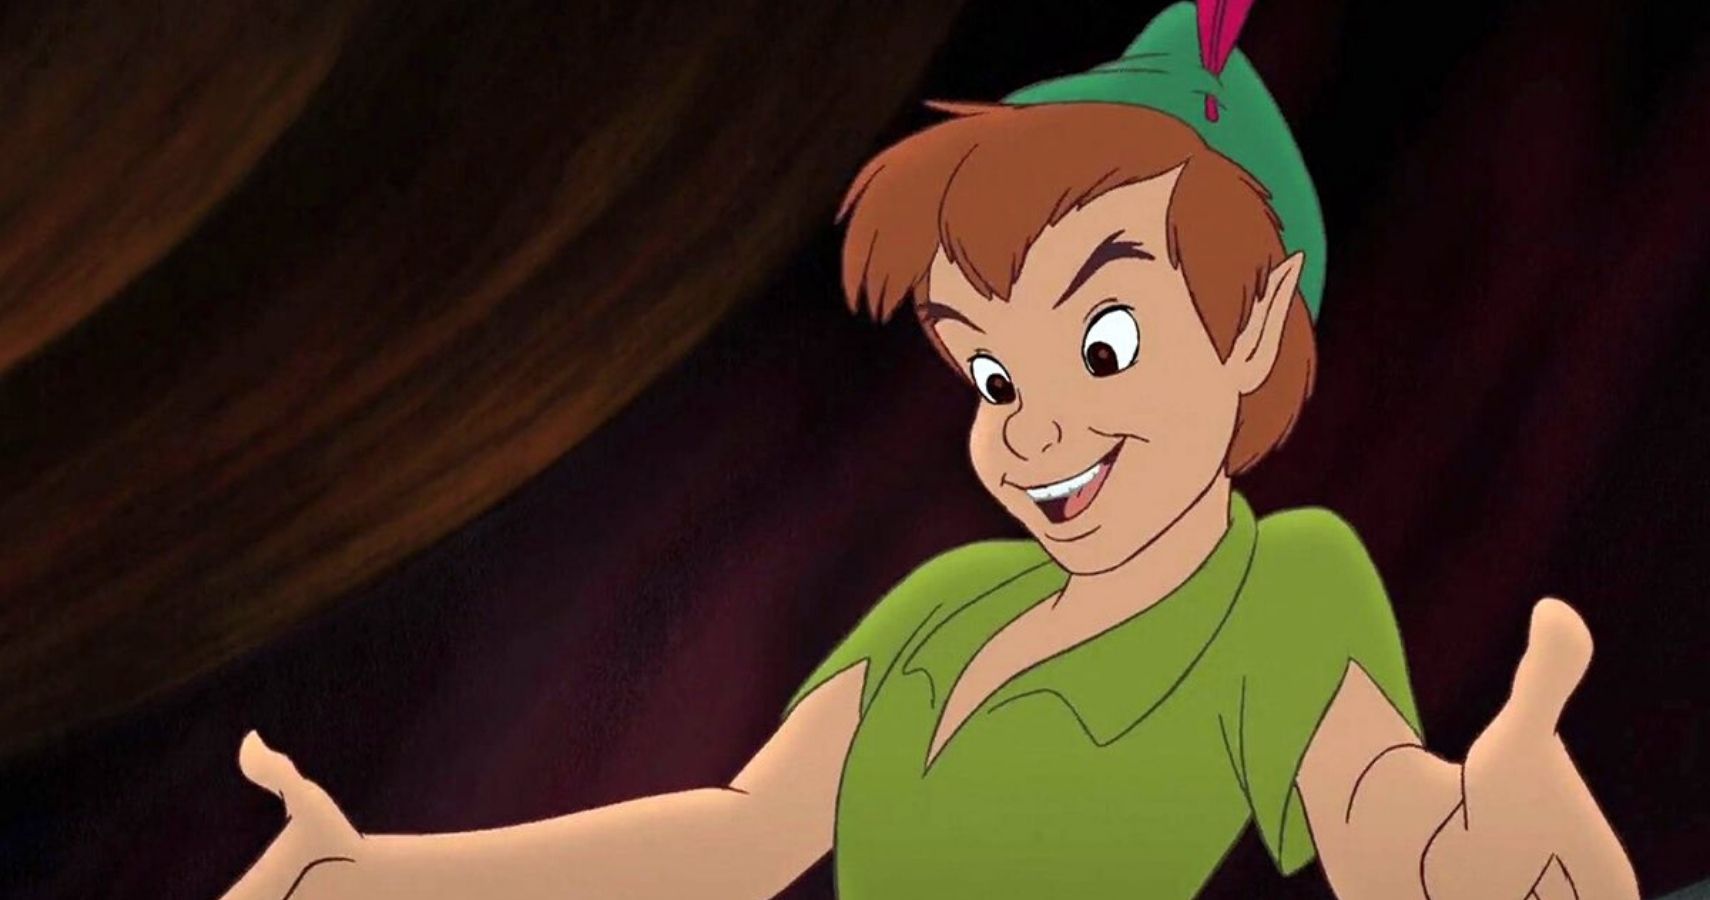 Peter Pan: : Movies & TV Shows